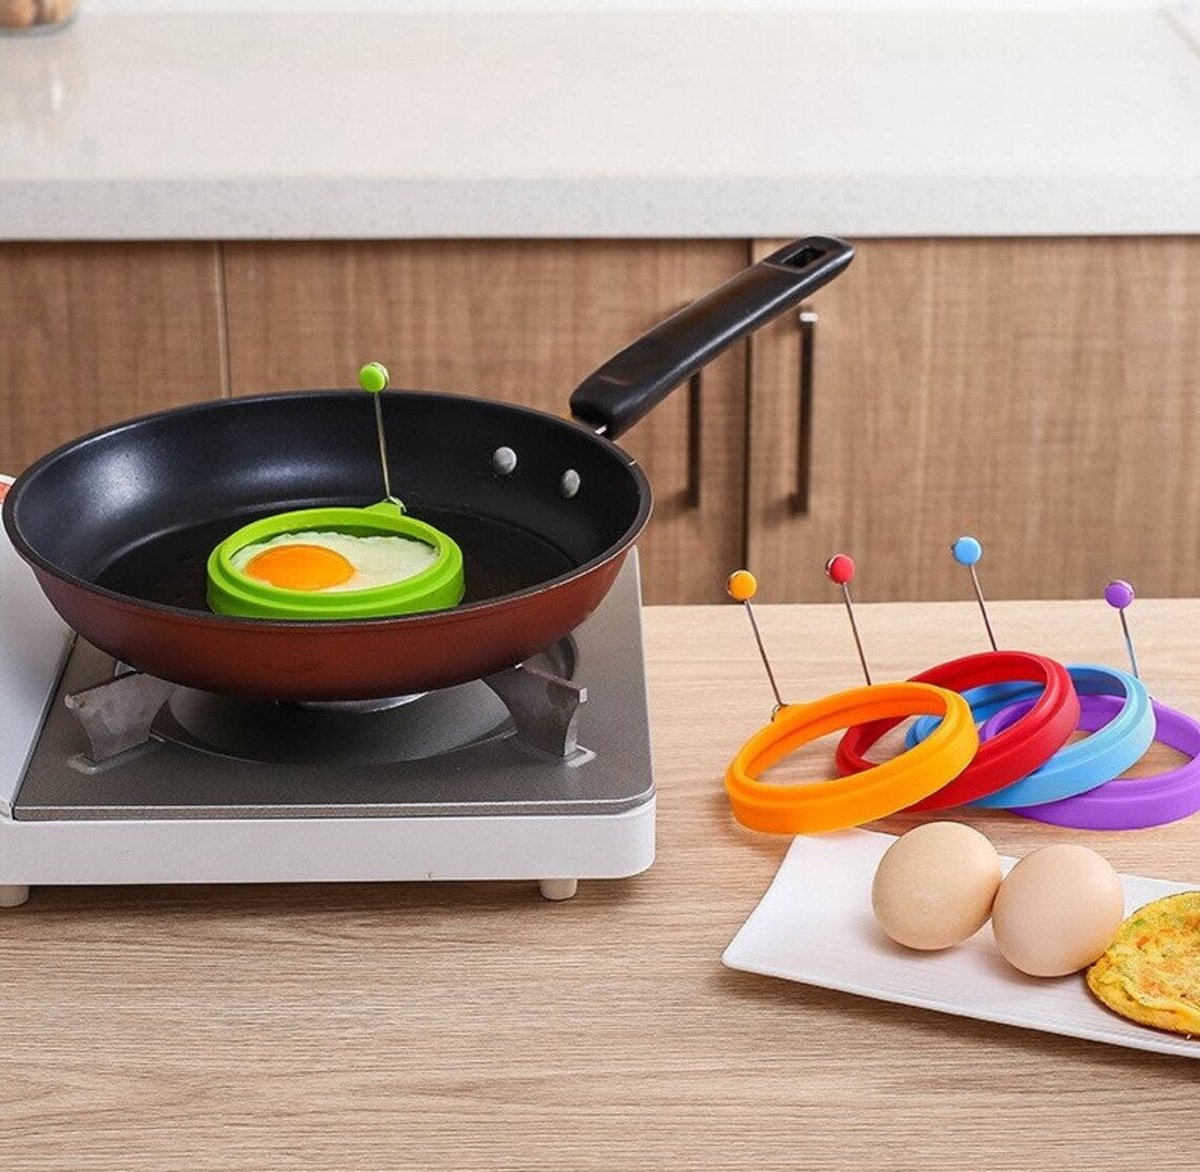 Ei ring Groen - Siliconen Ei-ring - Bakring - Pannekoekenring - Pancake ring - Bakvorm keuken - Pan - Bakprocuten - Bakaccesoire